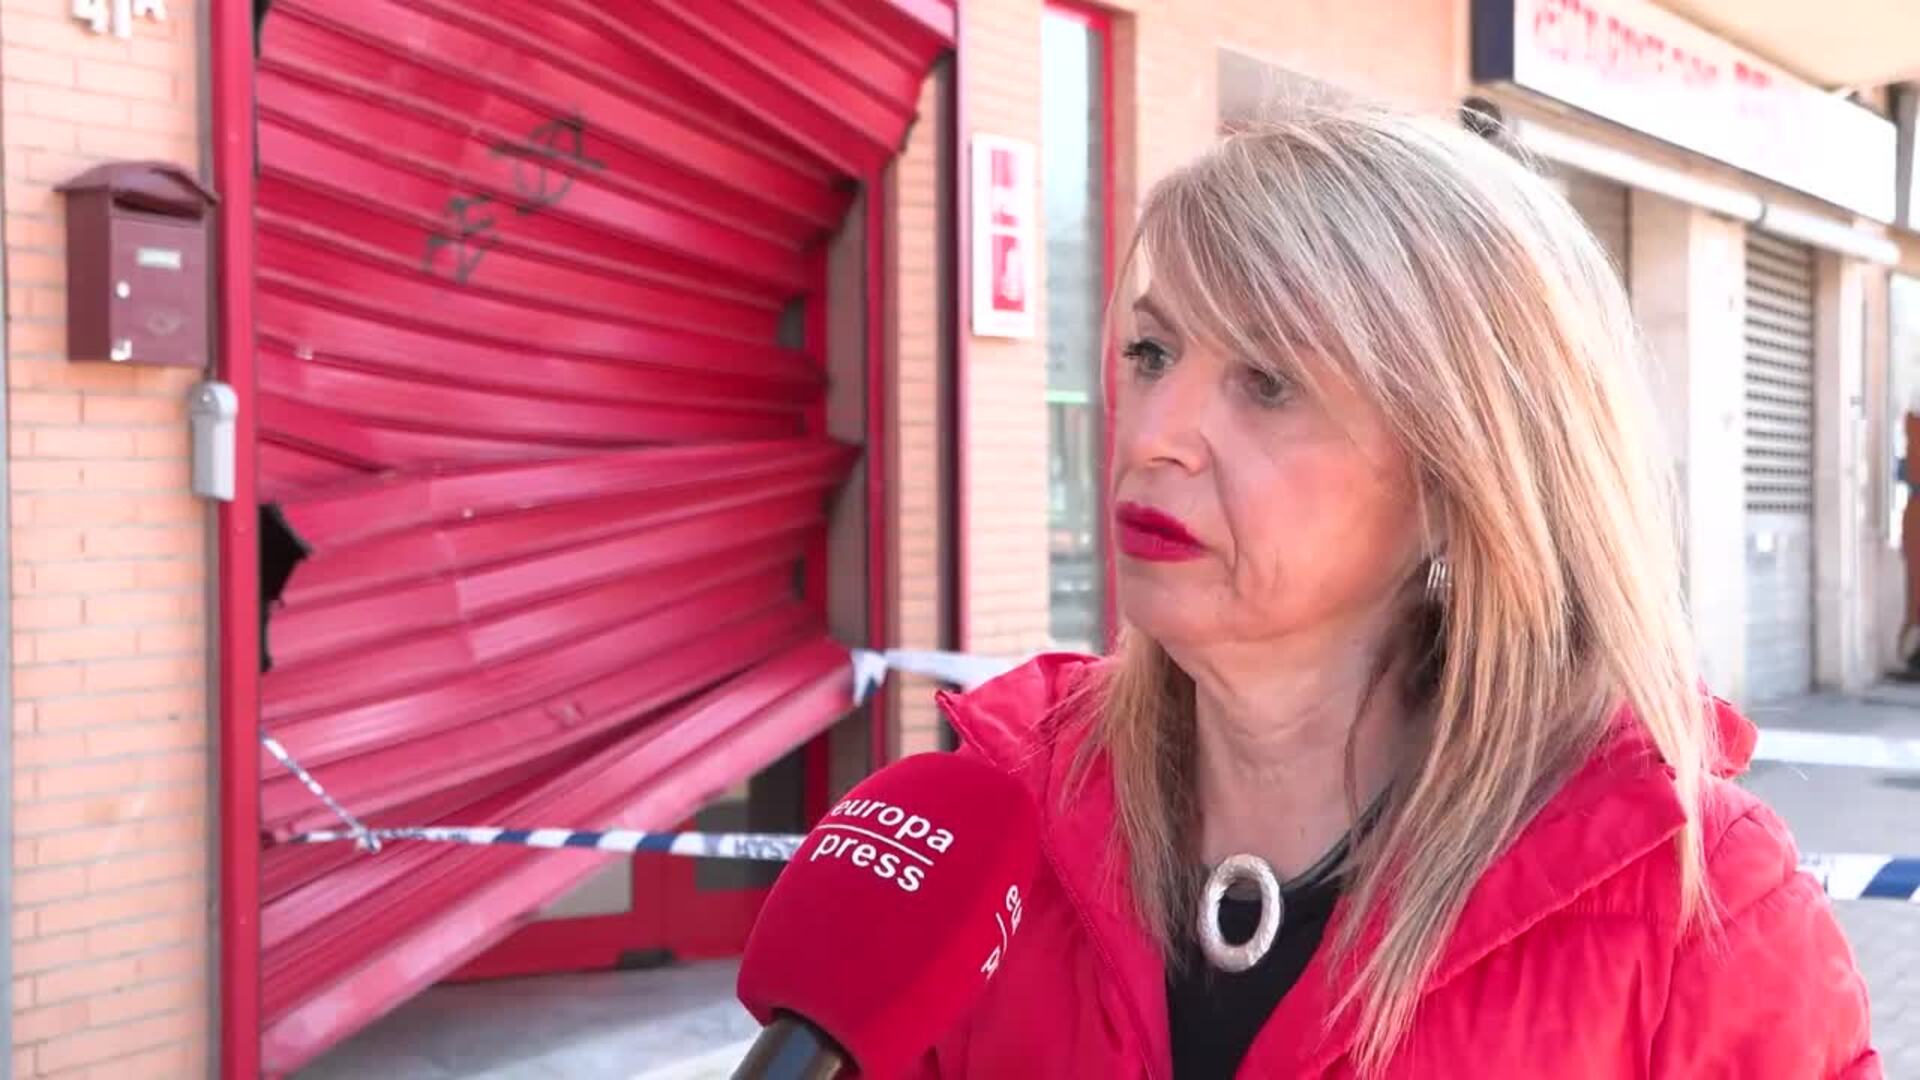 PSOE Almendralejo pide "respeto y la tolerancia" tras los actos vandálicos sufridos en su sede